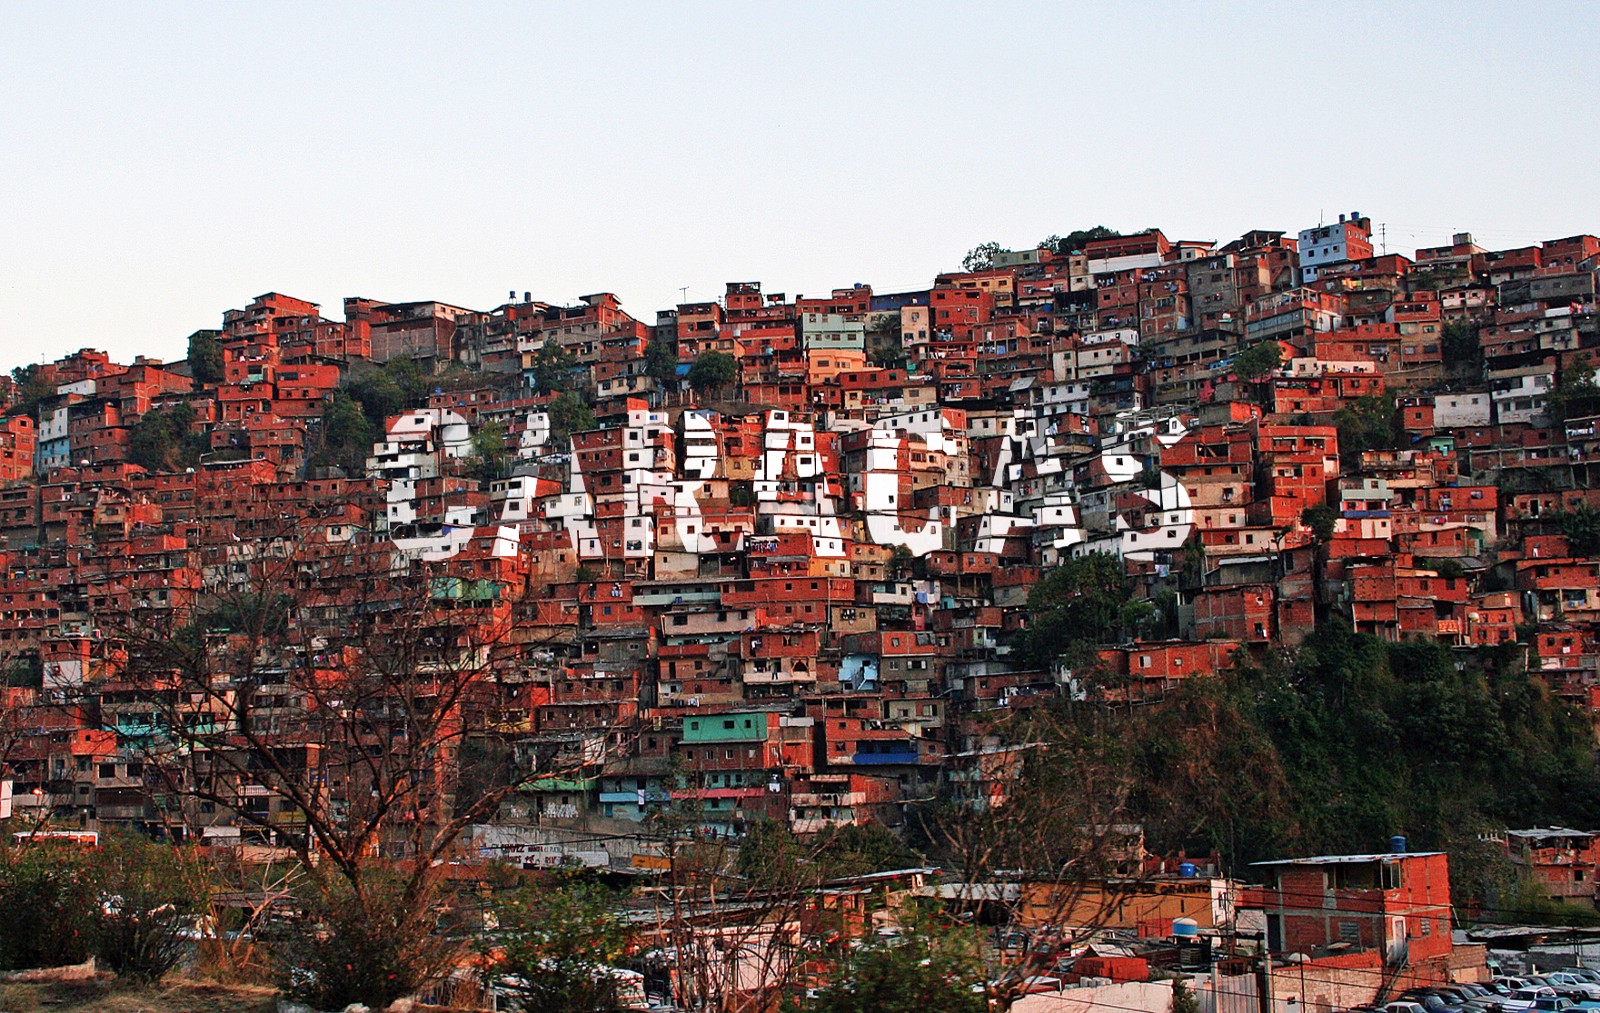 Thành phố Caracas của Venezuela, thành phố sử dụng bitcoin như là tiền tệ chính